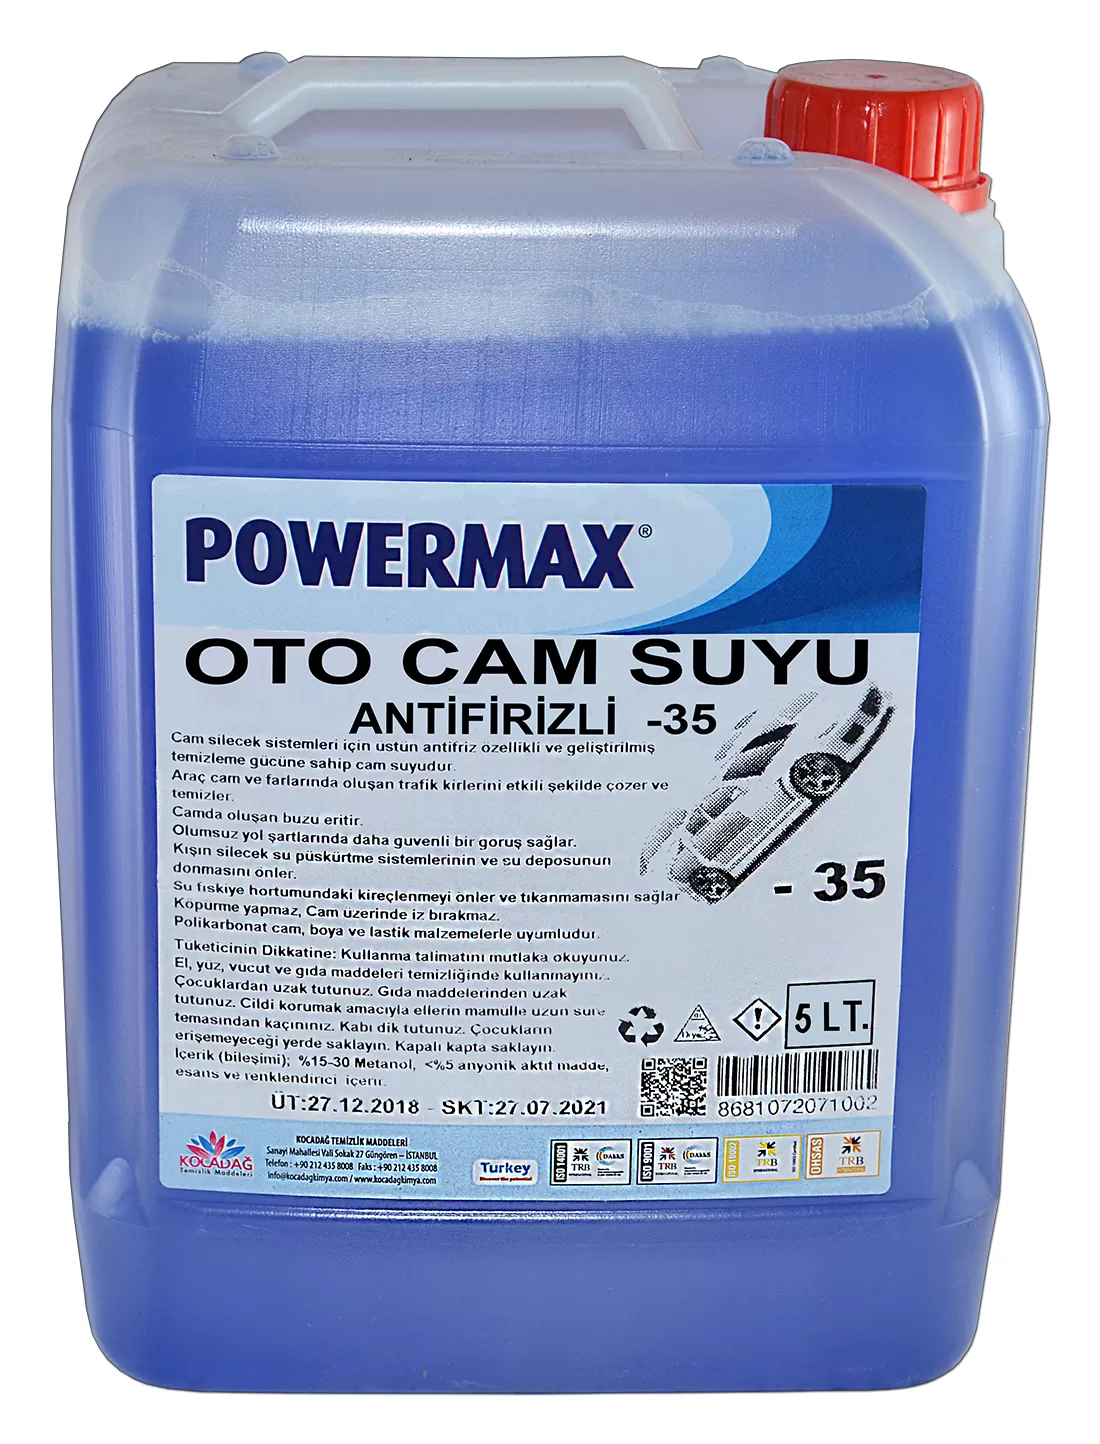 Powermax Oto Cam Suyu Antifirizli